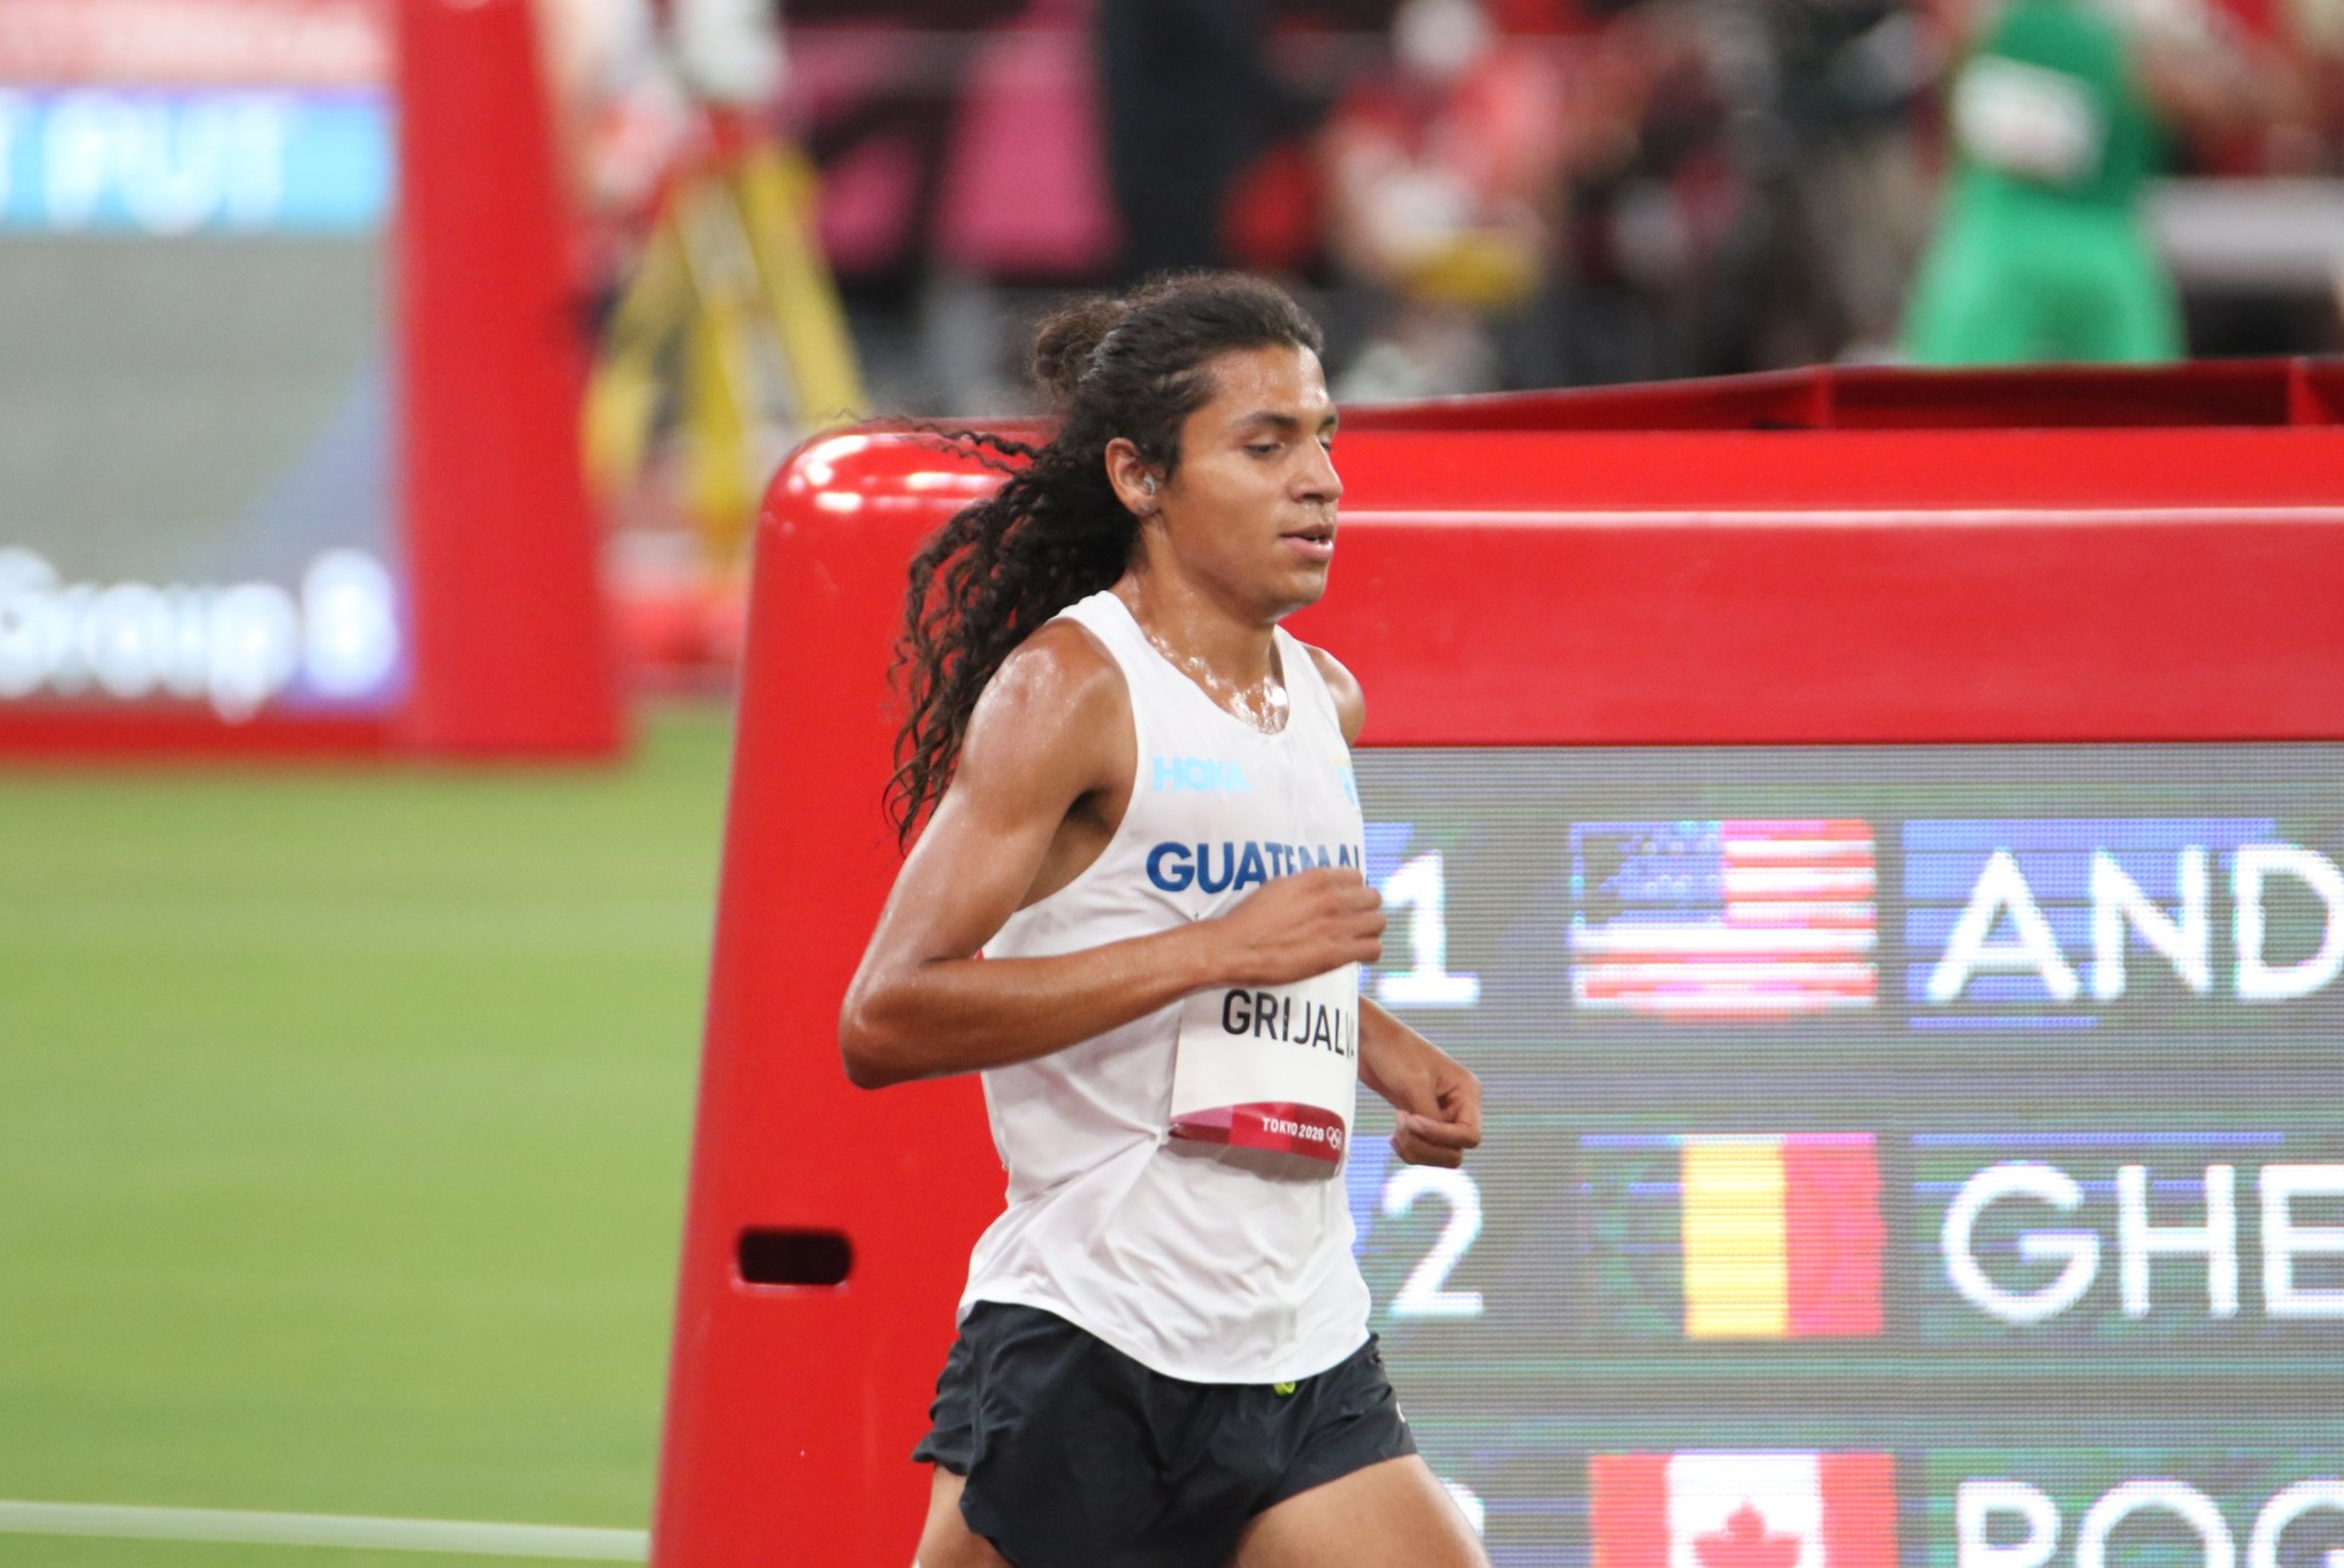 Luis Grijalva terminó décimo en la segunda serie de clasificación de los 5,000 metros, con tiempo de 13:34.11 minutos. Foto Comité Olímpico Guatemalteco.